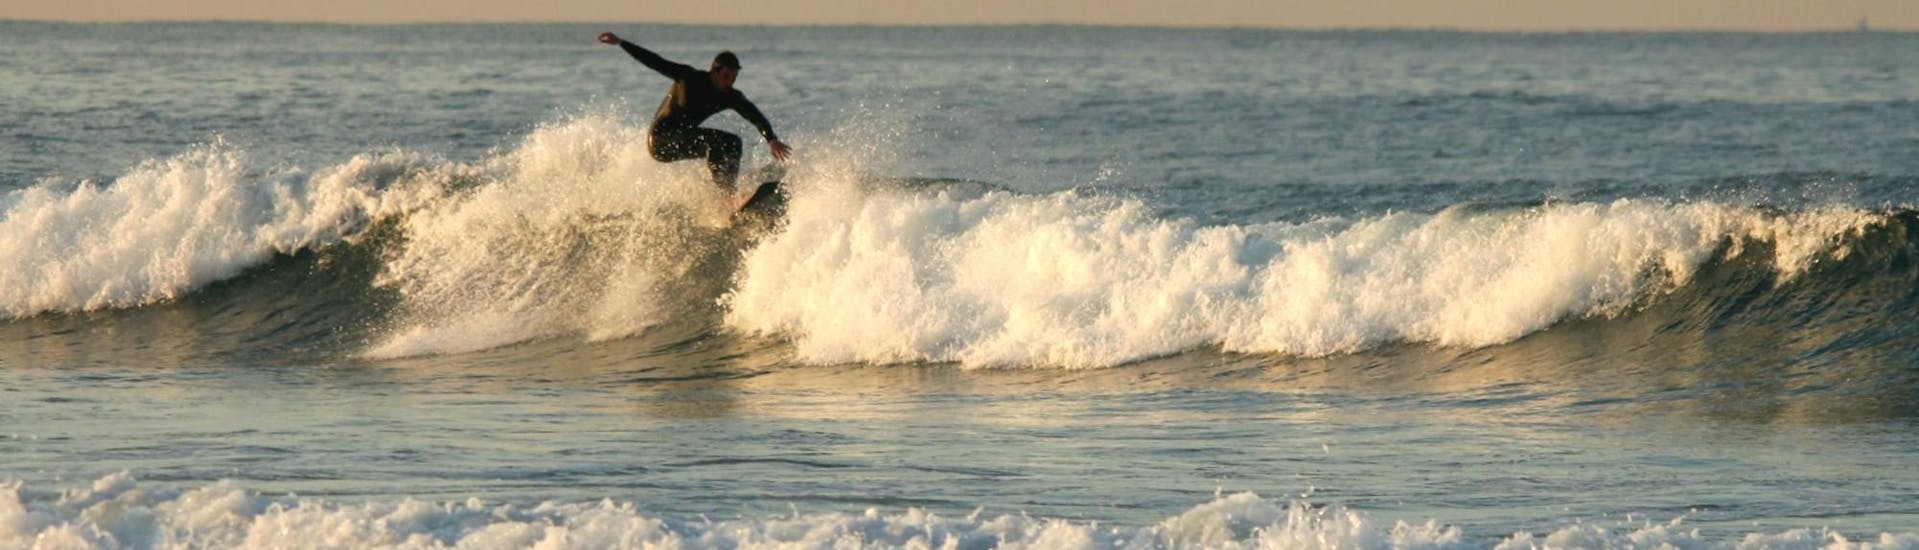 Lezioni private di surf a Matosinhos da 5 anni per tutti i livelli.